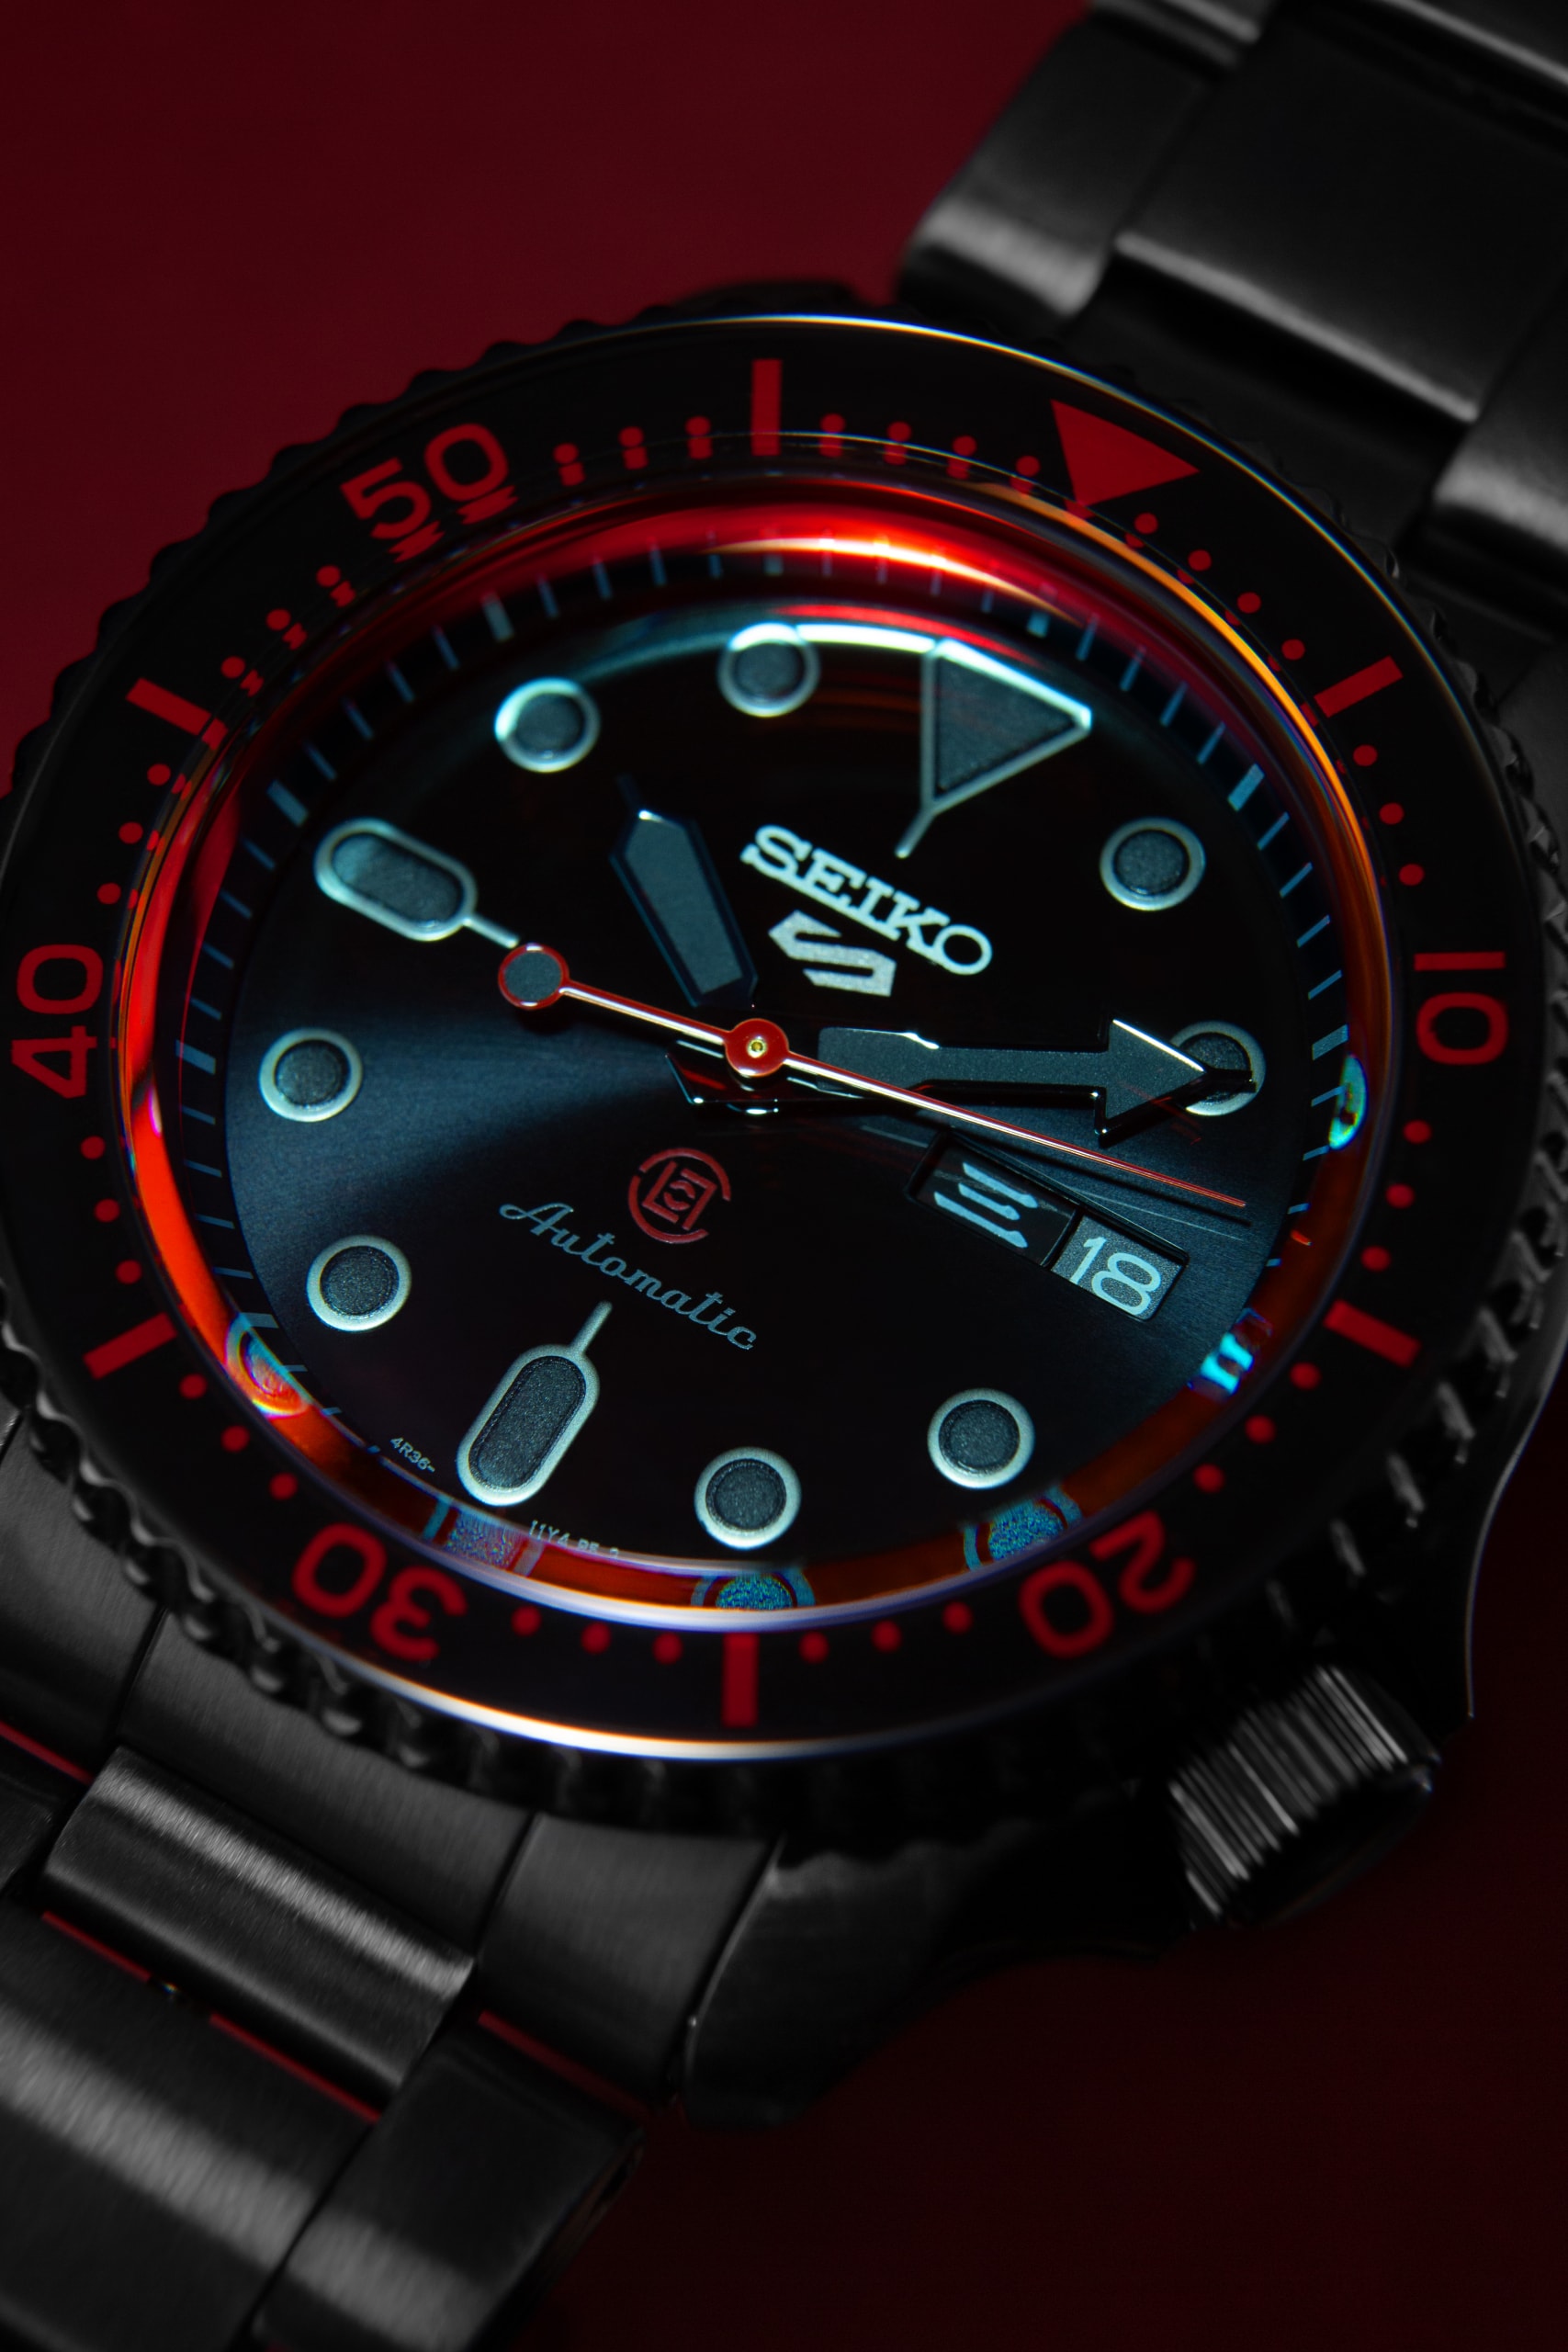 CLOT x Seiko 5 Sports 最新聯名錶款正式登場